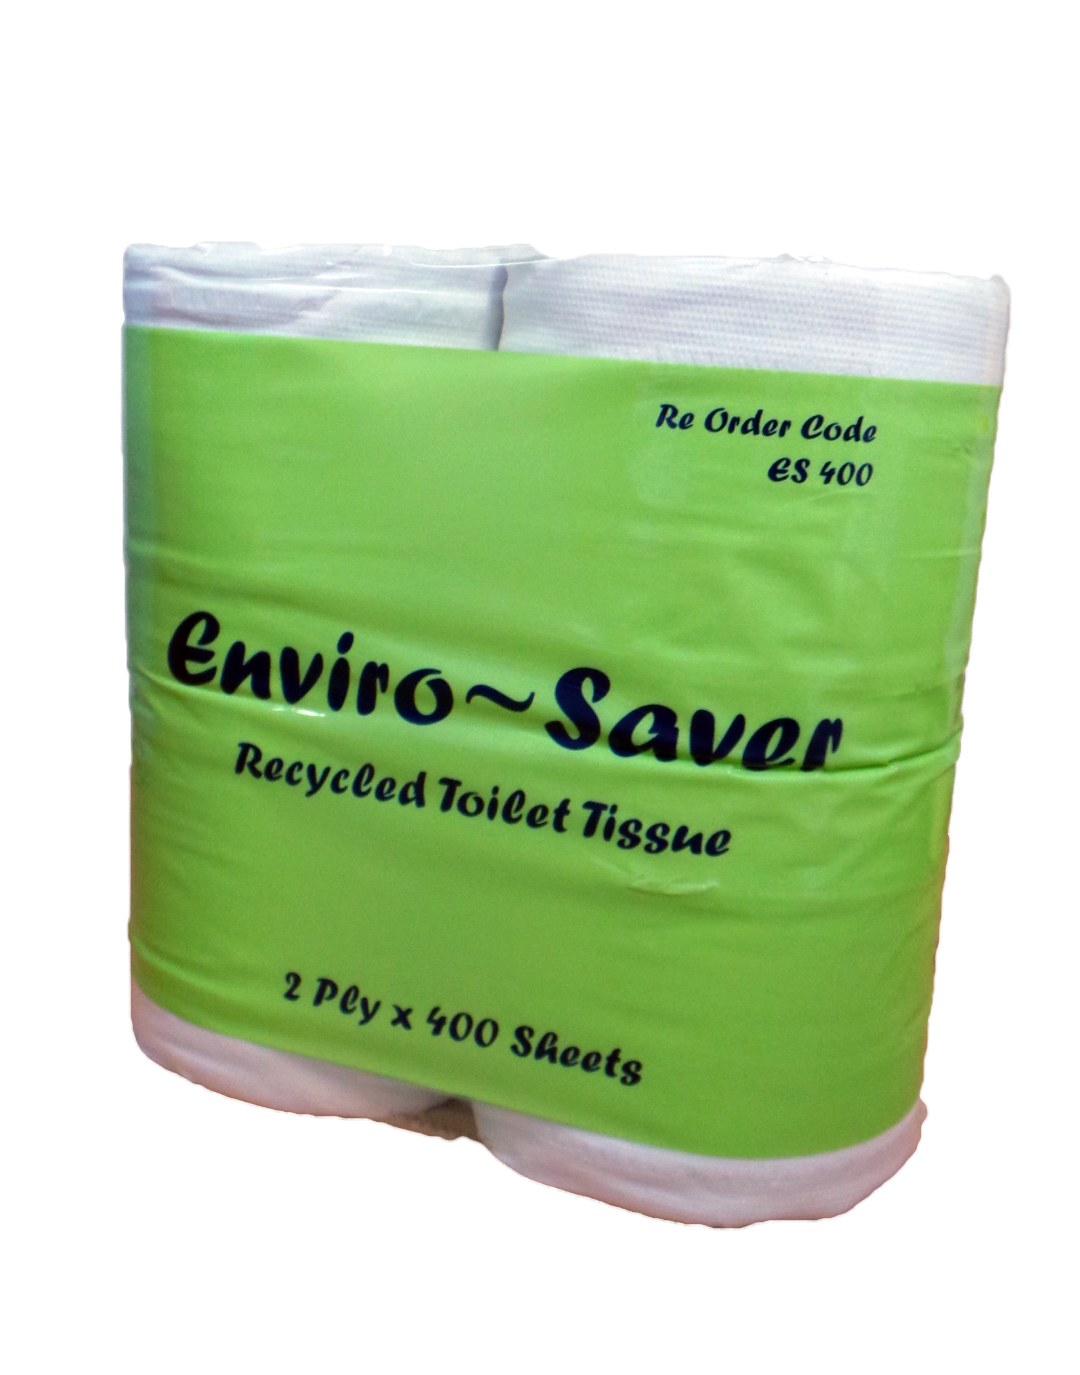 ENVIRO SAVER TOILET TISSUE BALE